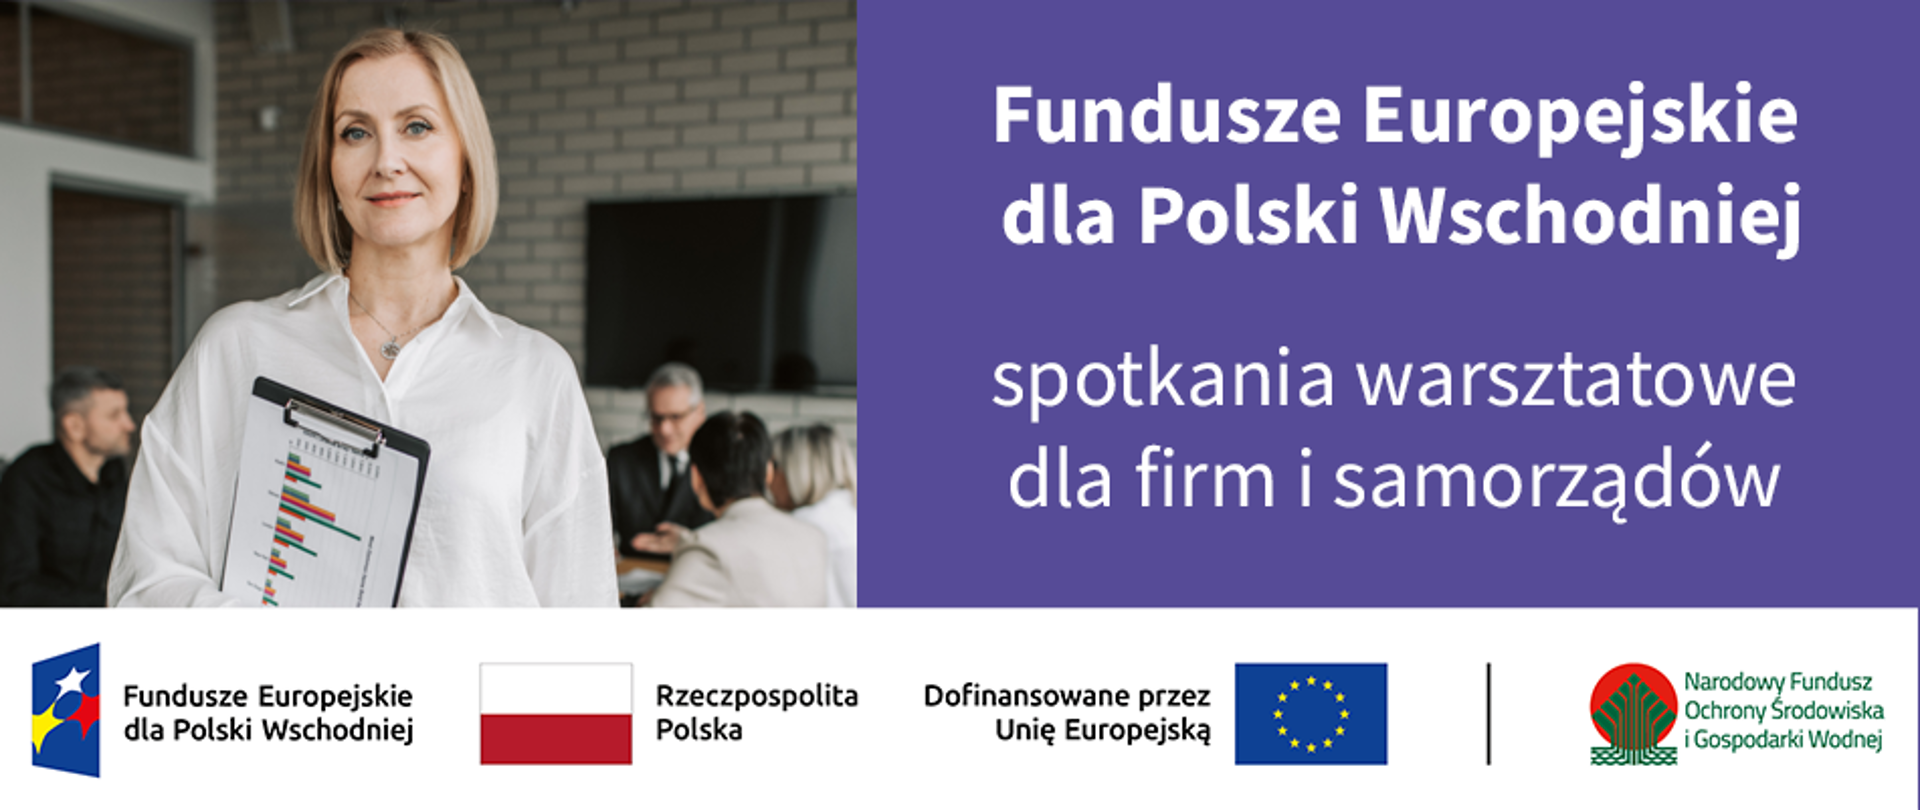 Plansza z napisem: "Fundusze Europejskie dla Polski Wschodniej spotkania warsztatowe dla firm i samorządów". Na dole ciąg znaków dofinansowania Unijnego. Po kliknięciu baneru pobierze się wspomniane stanowisko.